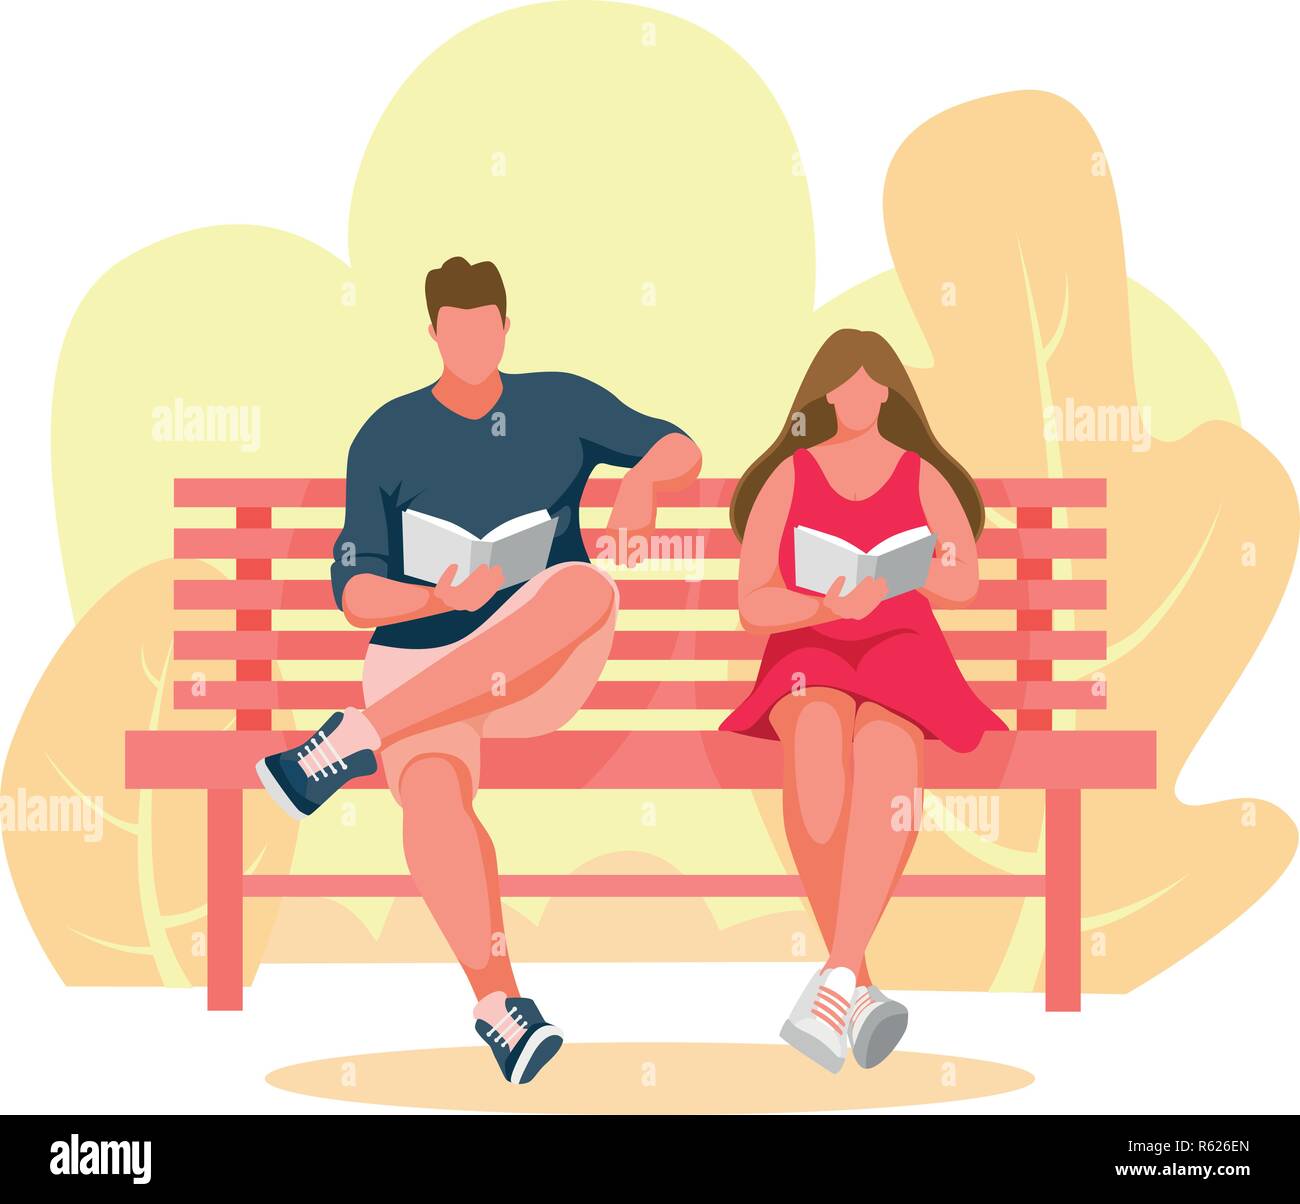 L'homme et la jeune fille assise sur un banc. Guy reading book. Woman Reading book. Banc de parc Vector Illustration Illustration de Vecteur